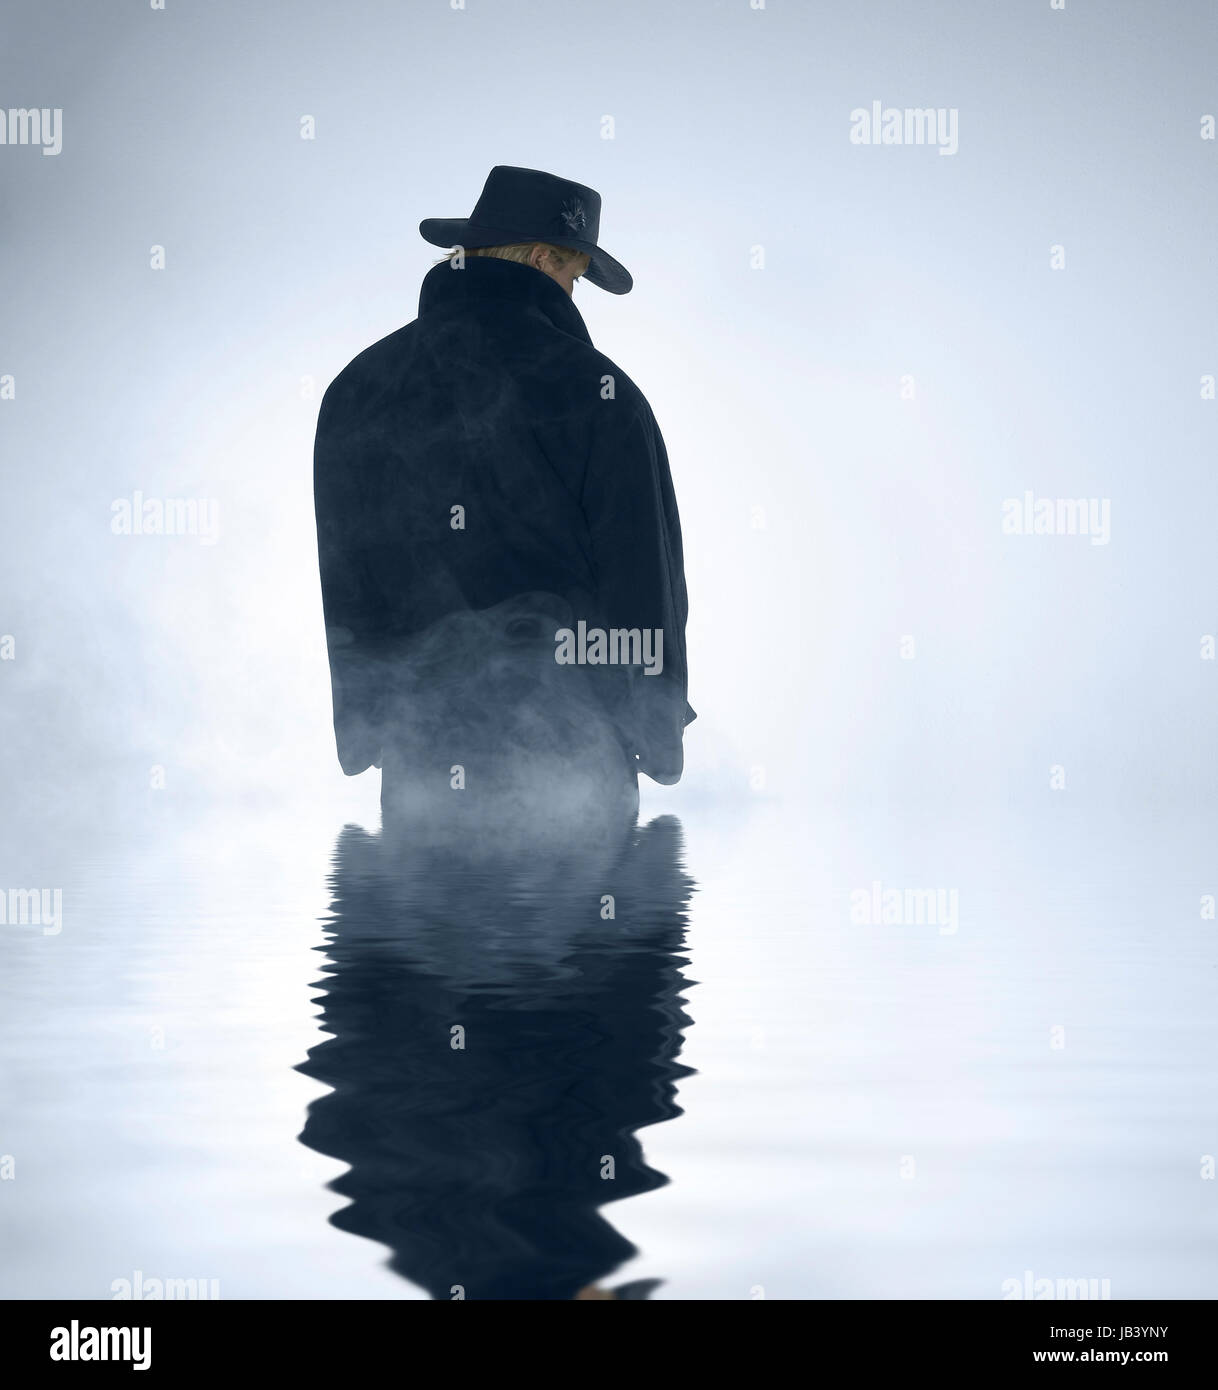 mystische Landschaft zeigt eine Person trug einen dunklen Mantel und Hütte stehend im nebligen Ambiente mit reflektierenden Wasseroberfläche Stockfoto